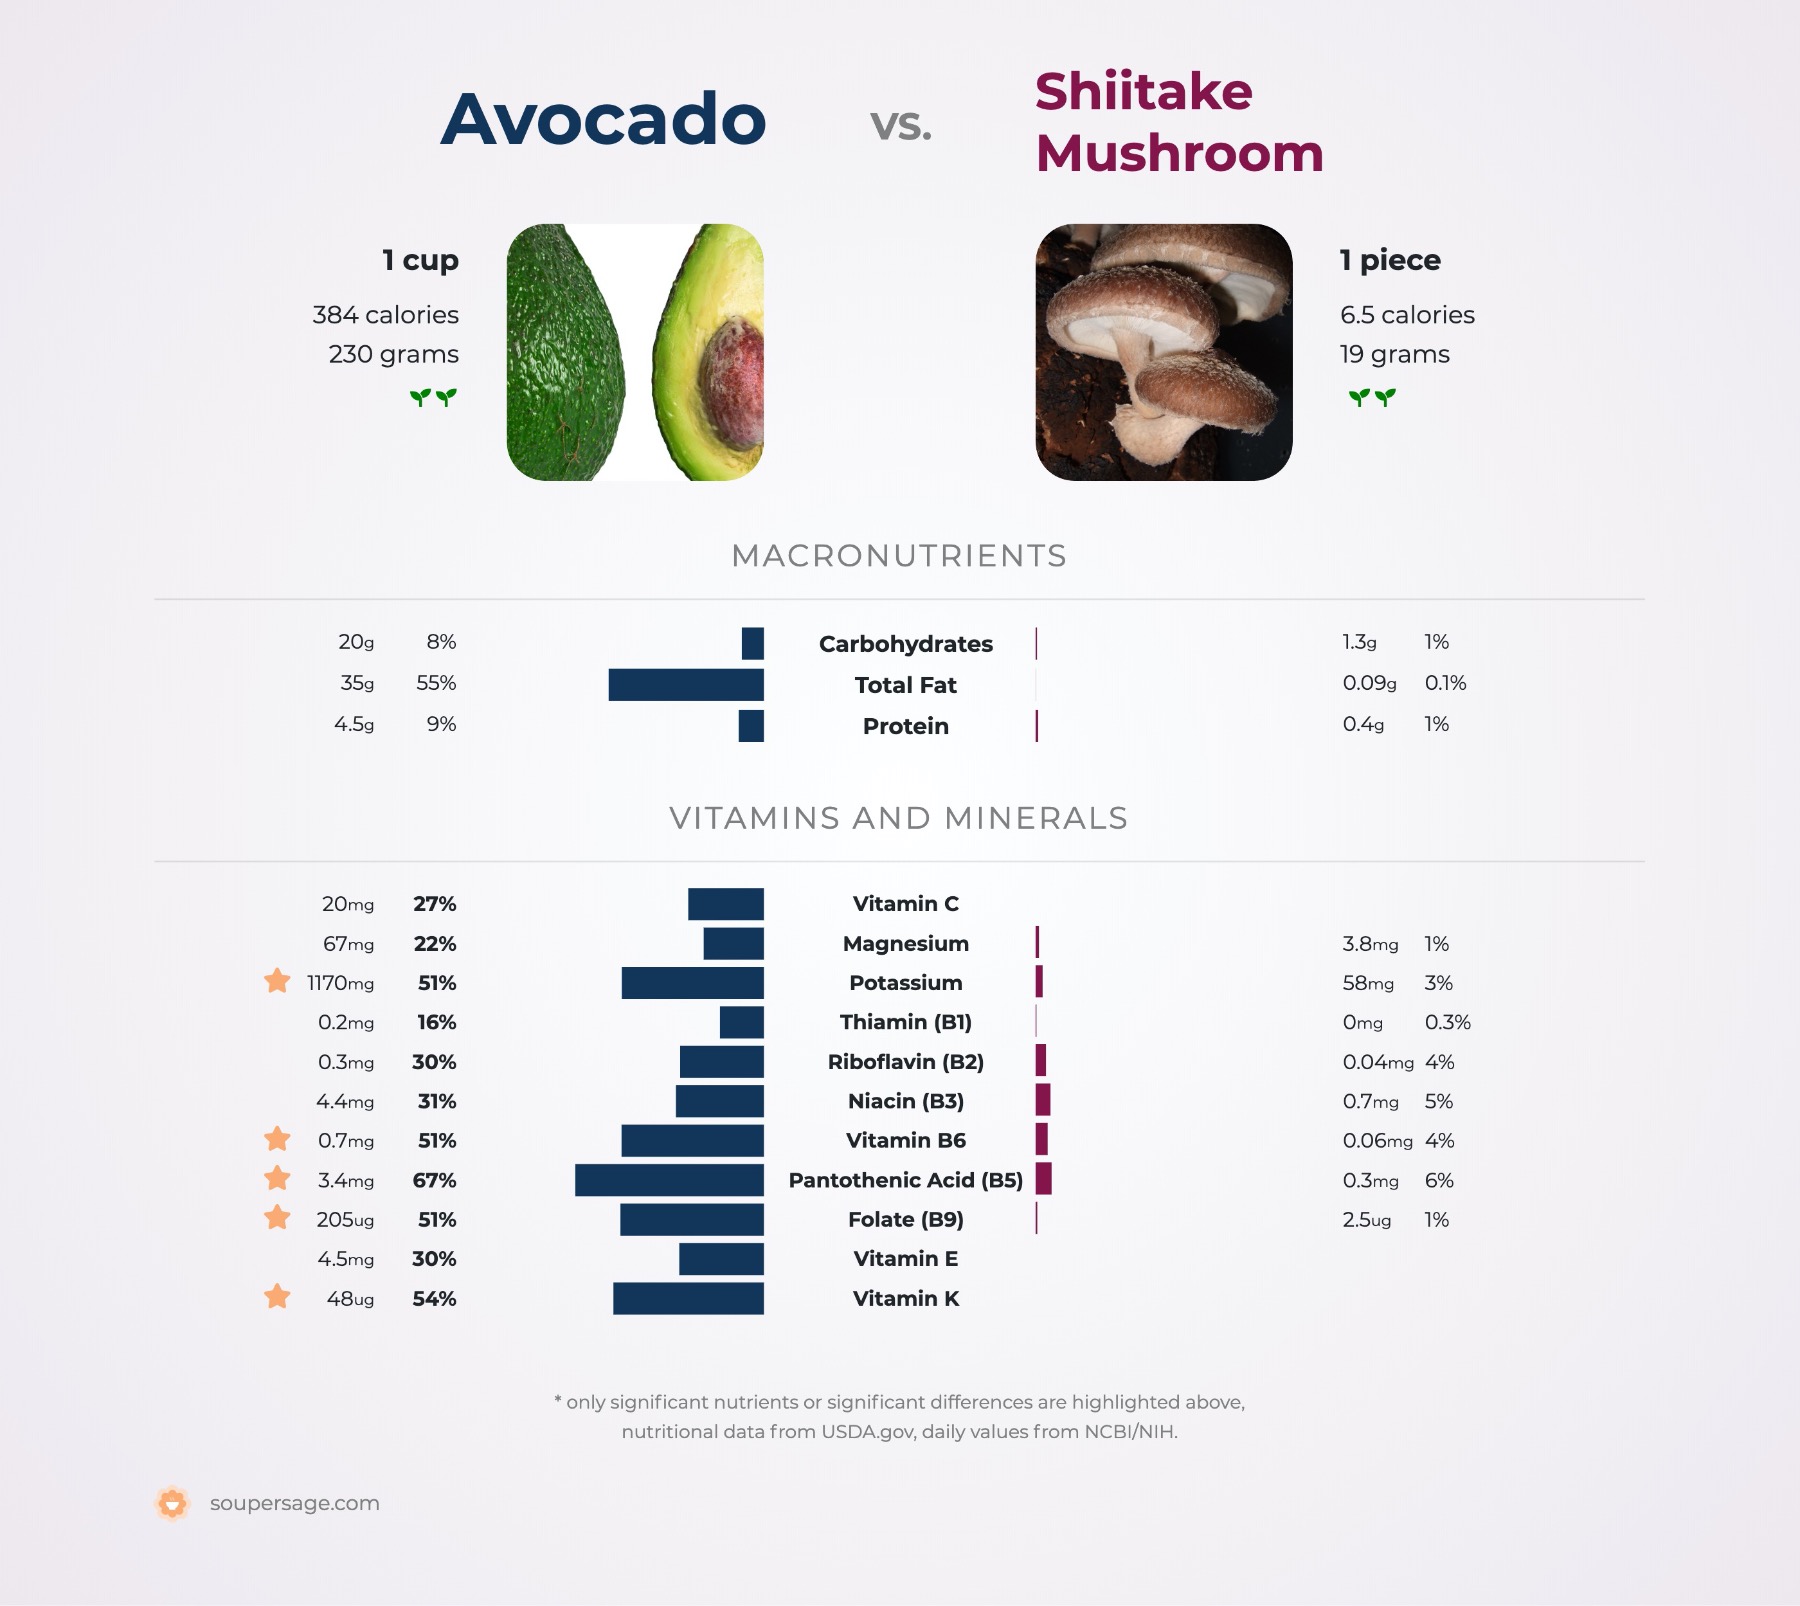 nutrition comparison of avocado vs. shiitake mushroom